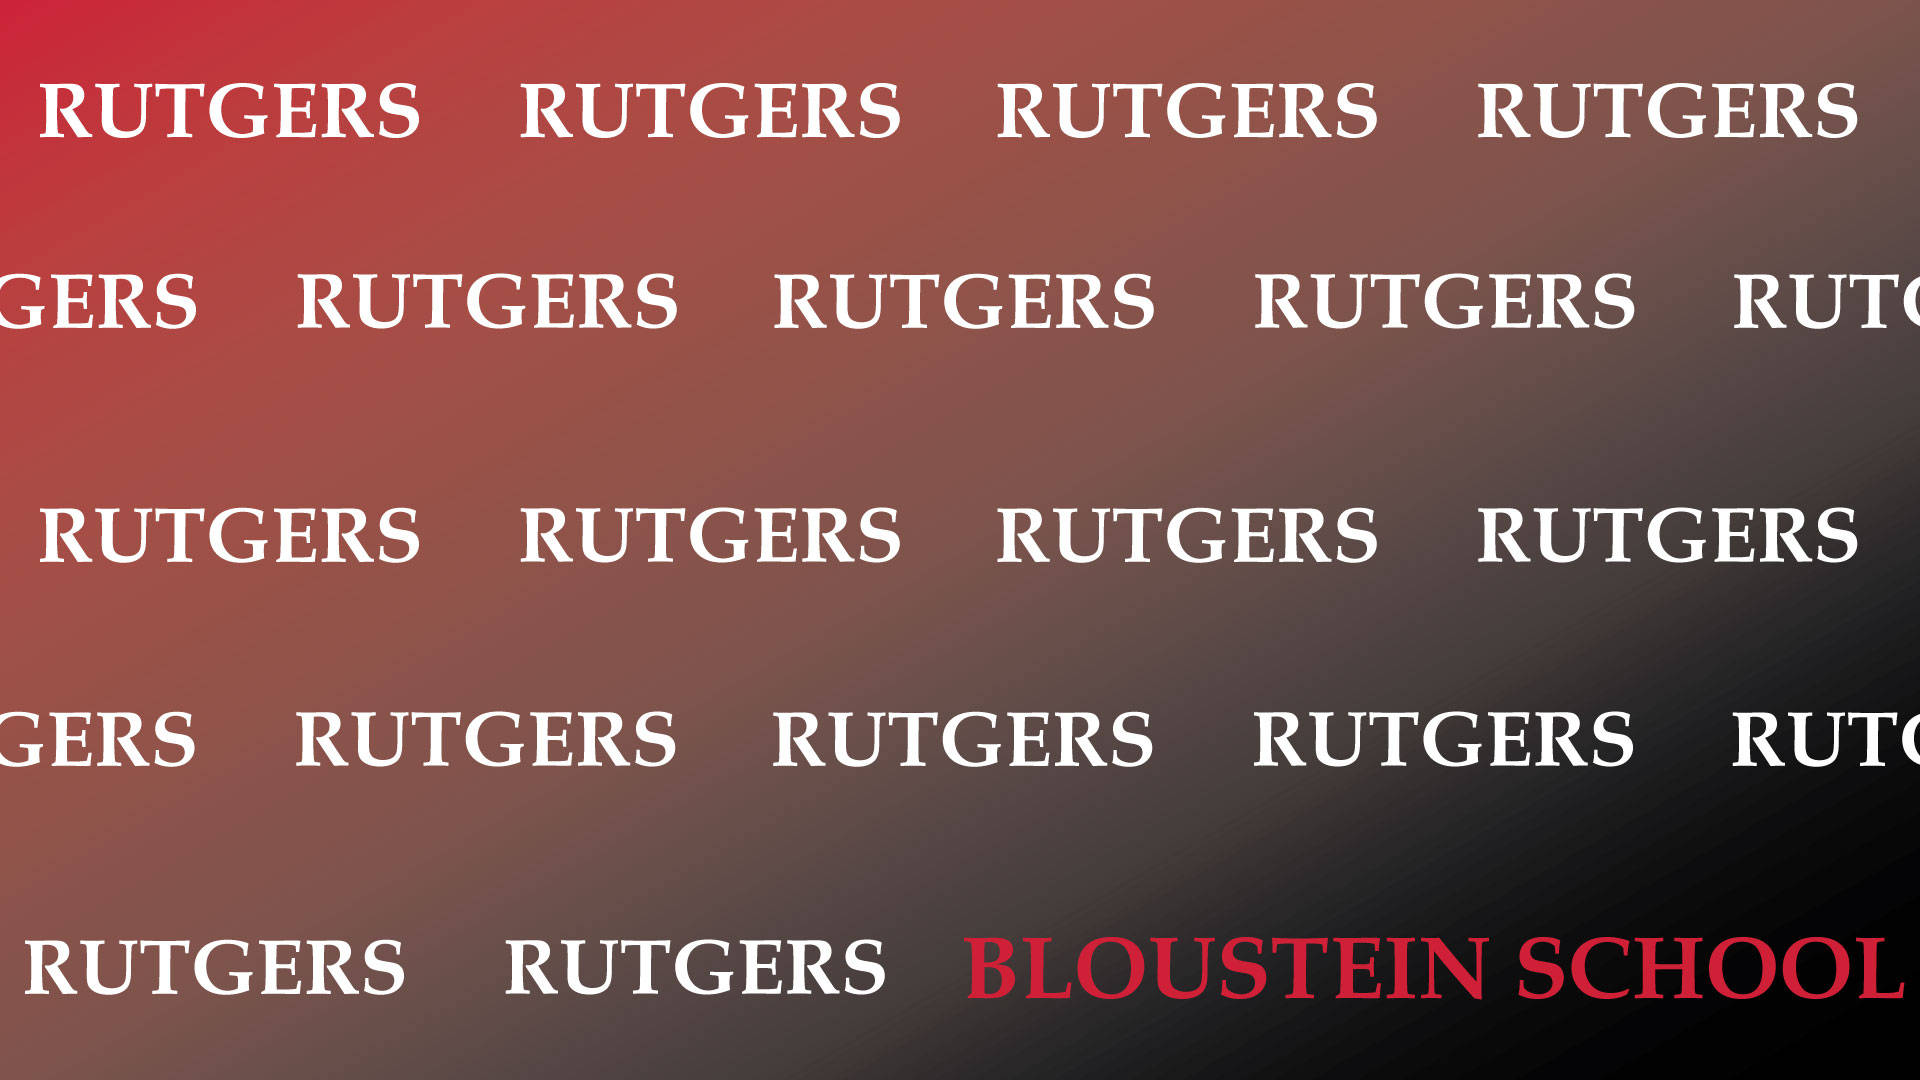 Rutgersbloustein School Gradient Background Skulle Översättas Till Svenska Som Gradvis Bakgrundsbild För Rutgers Bloustein Skola. Wallpaper